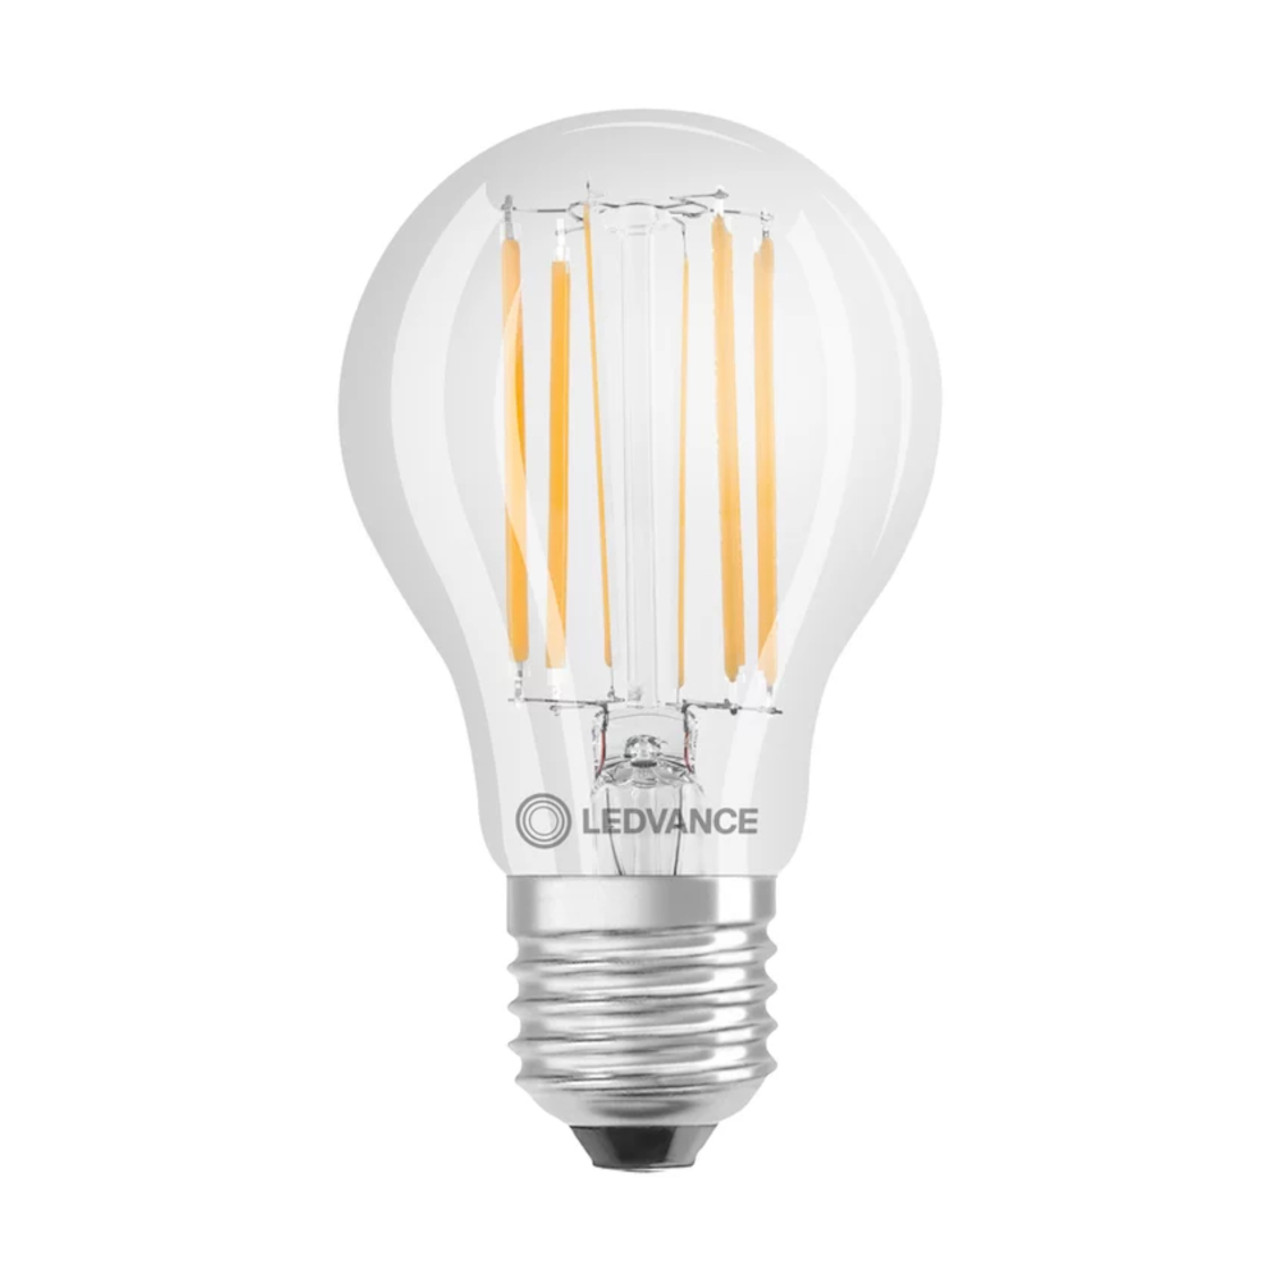 LED GLS 7.5W (75W eqv.) E27 4000K Clear Ledvance